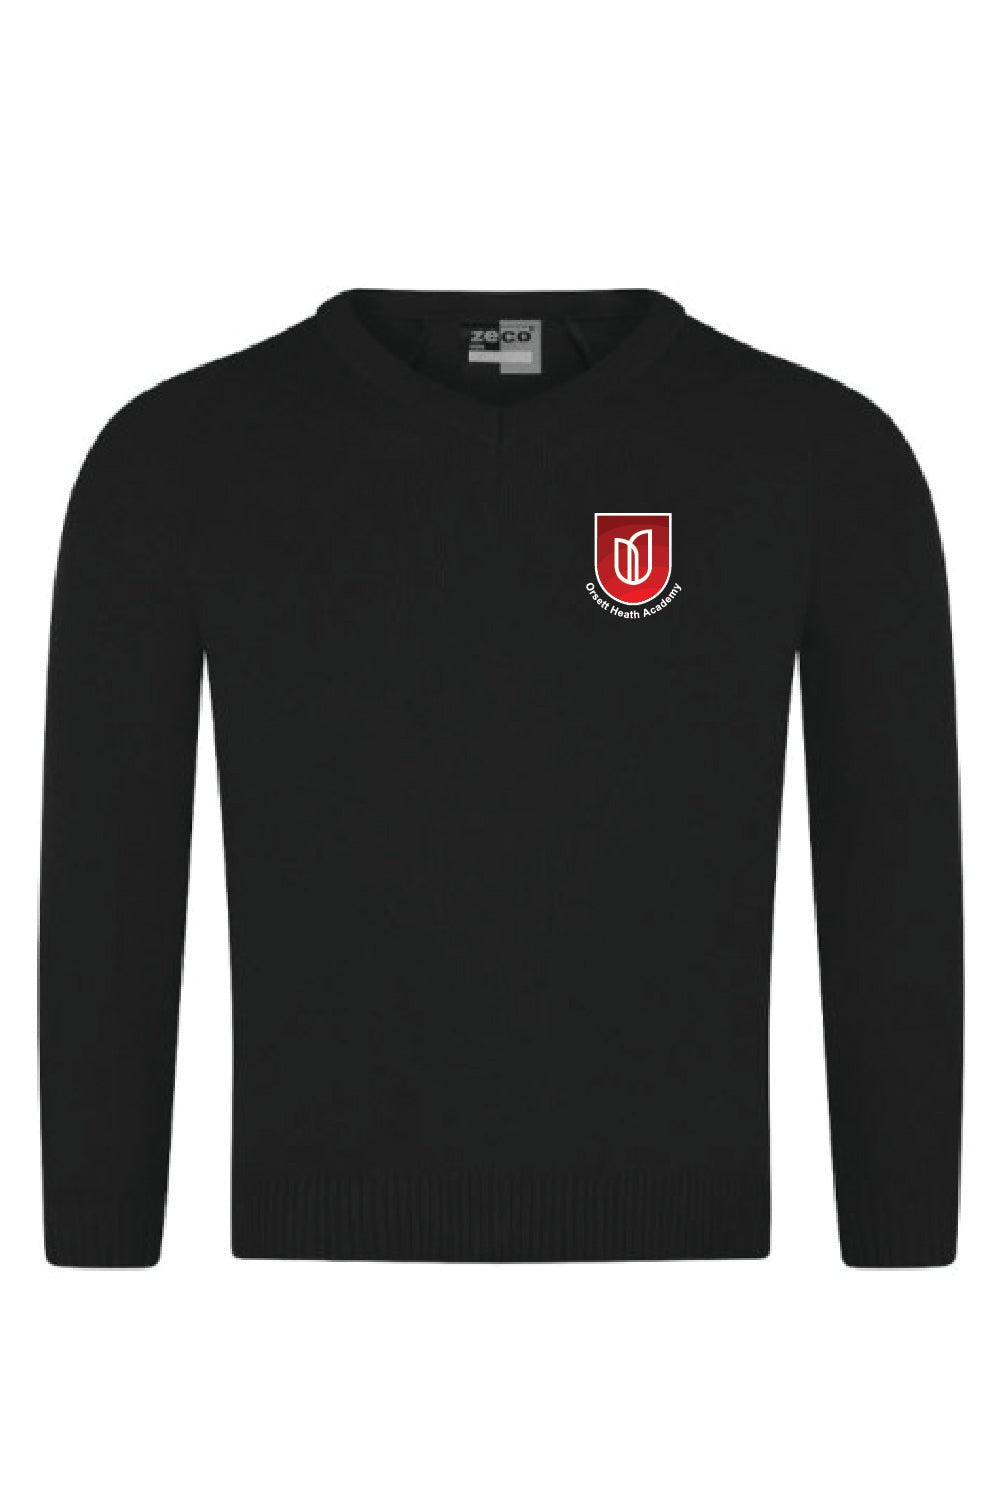 Orsett Heath Knitted Jumper - Uniformwise Schoolwear